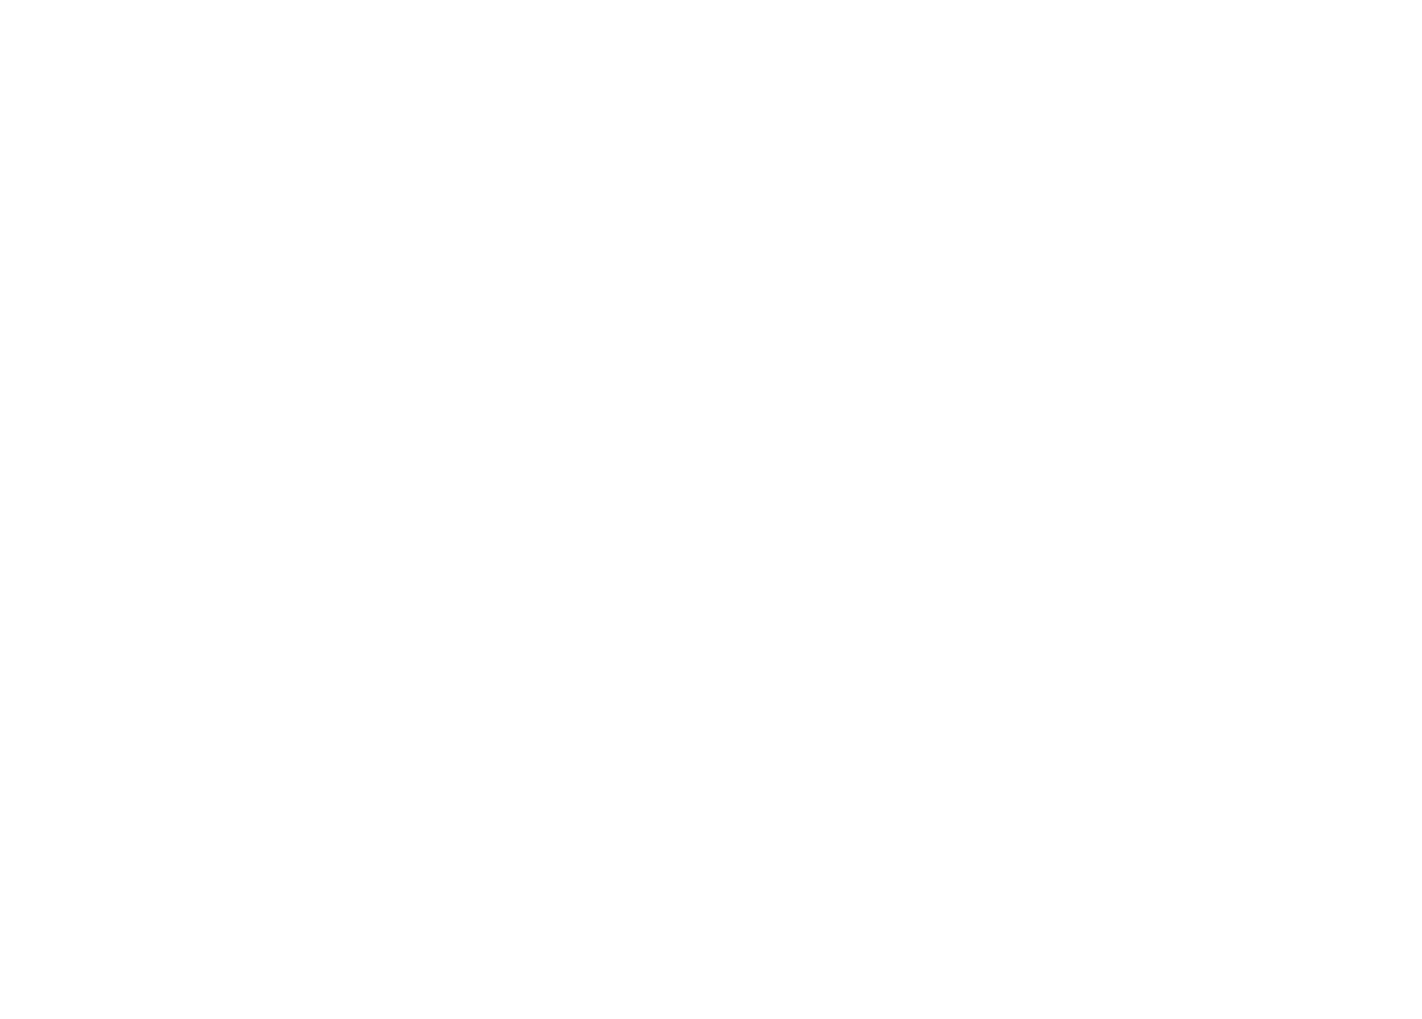 PAR Services Group